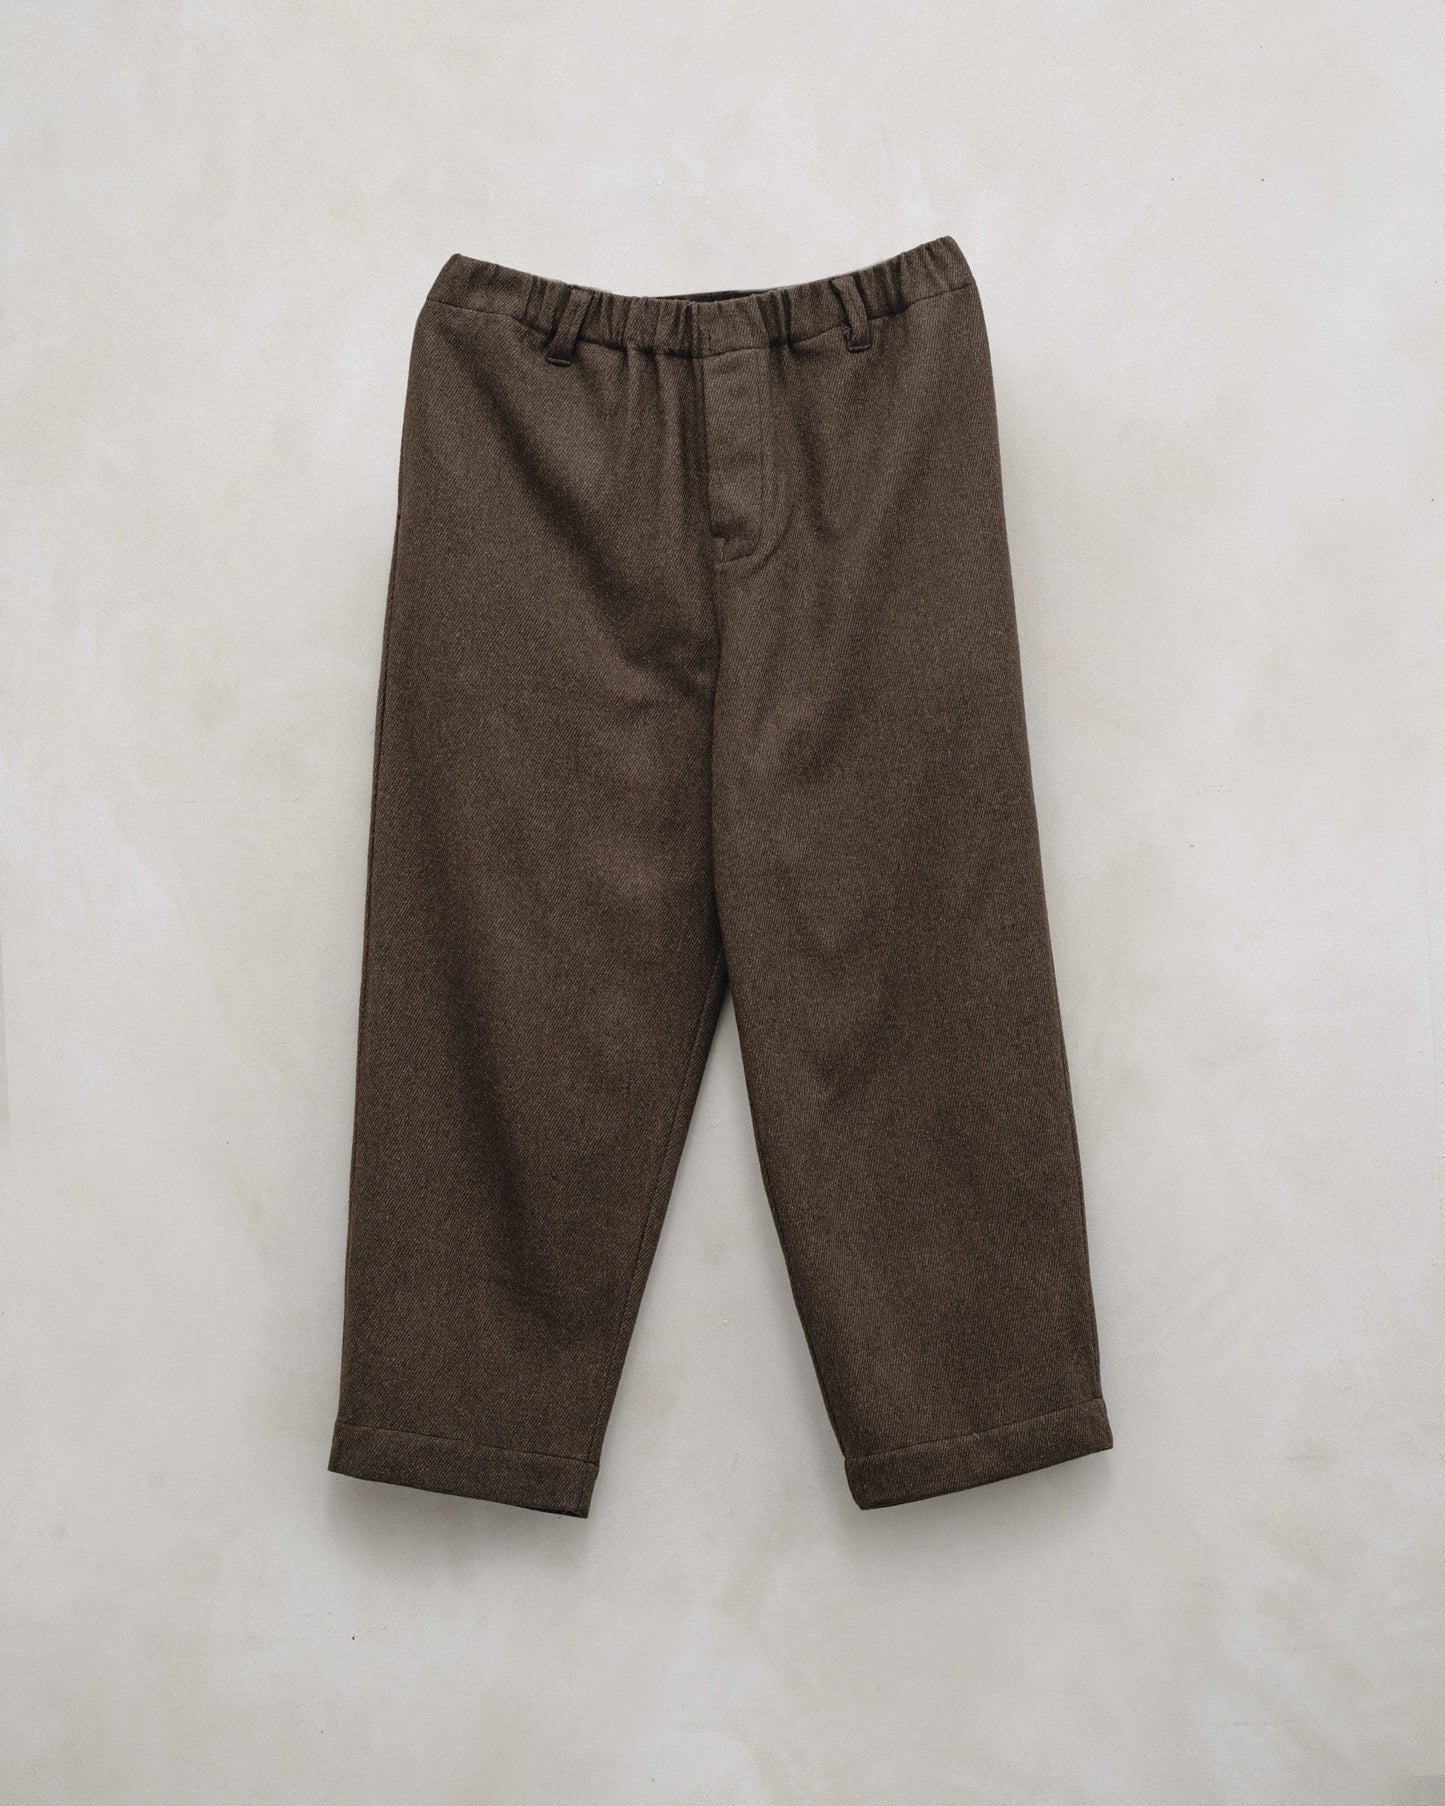 Elastic Pant - Yarn Dyed Wool/Cotton Twill, Olive Melange